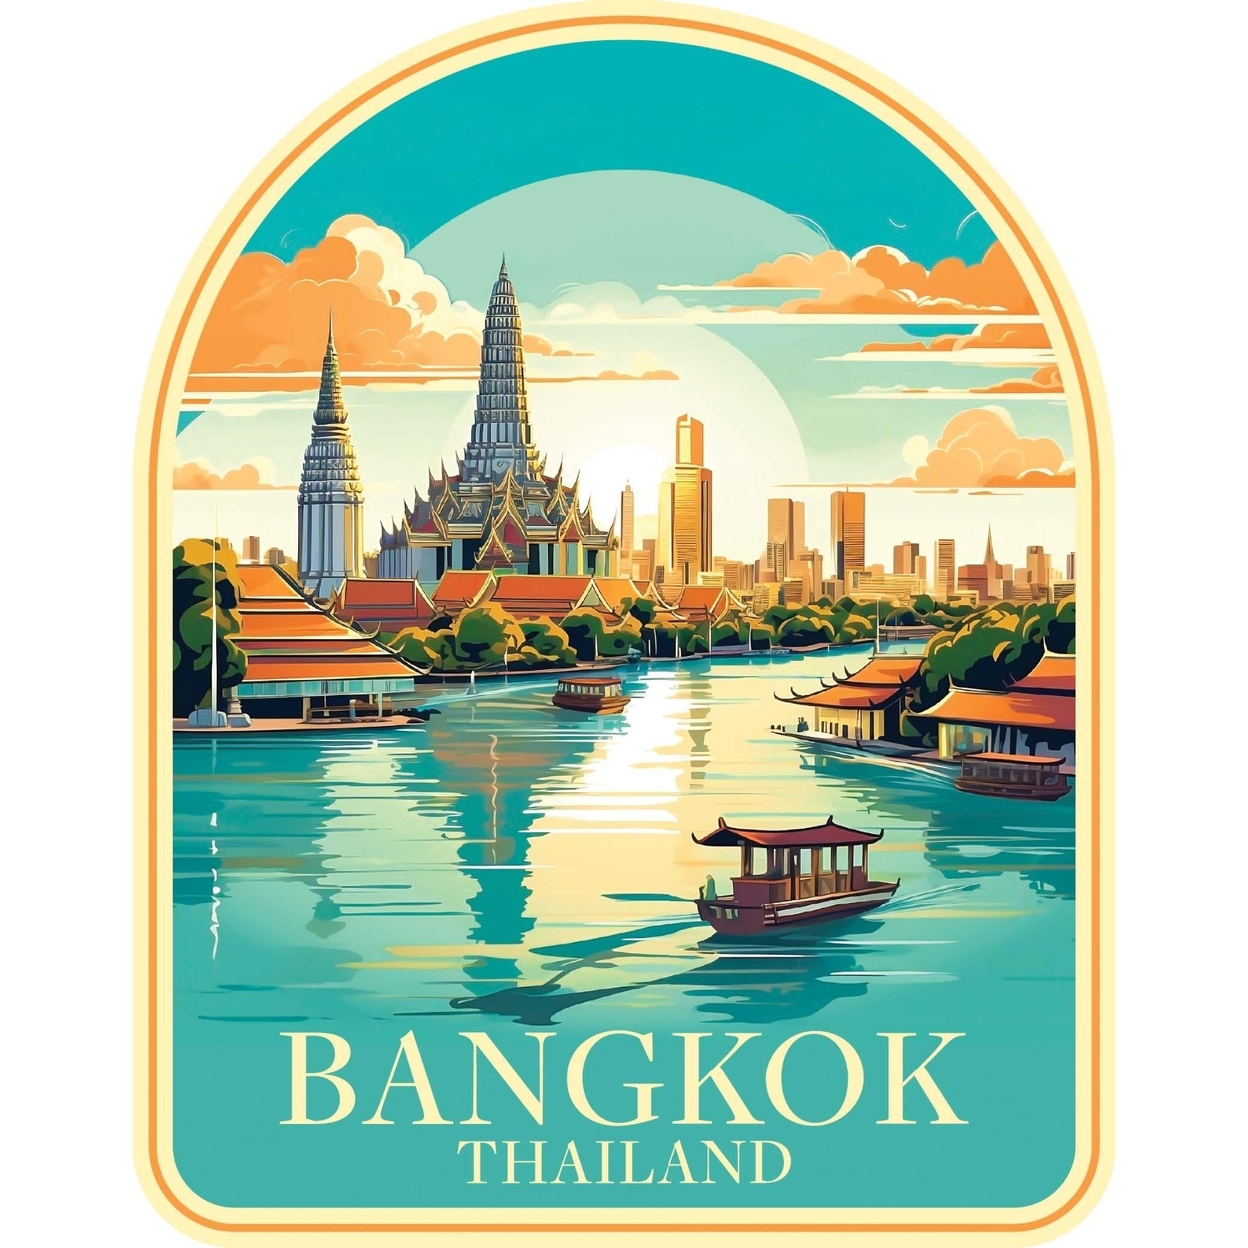 Bangkok Thailand A Souvenir Vinyl Decal Sticker - 6-Inch